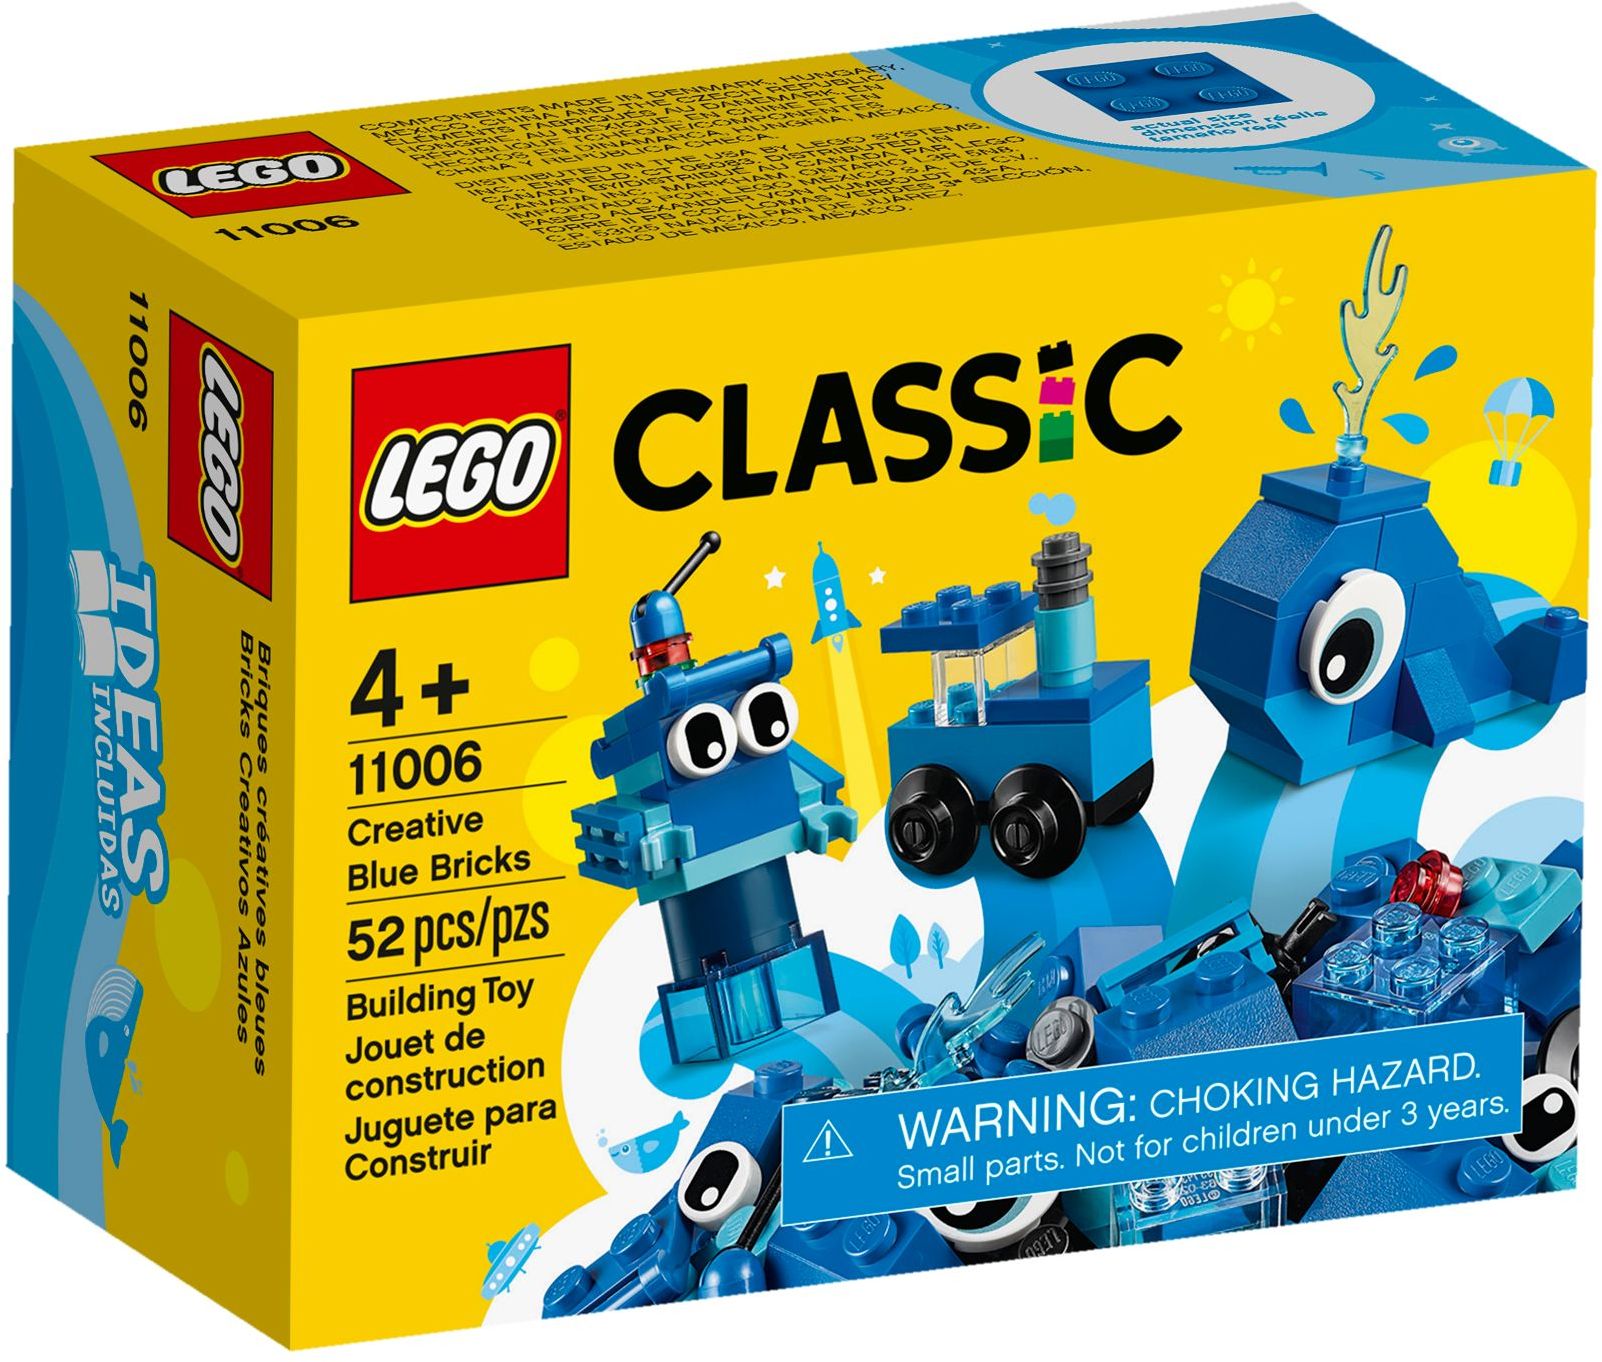 LEGO Classic - Kreativa blå klossar  (11006)